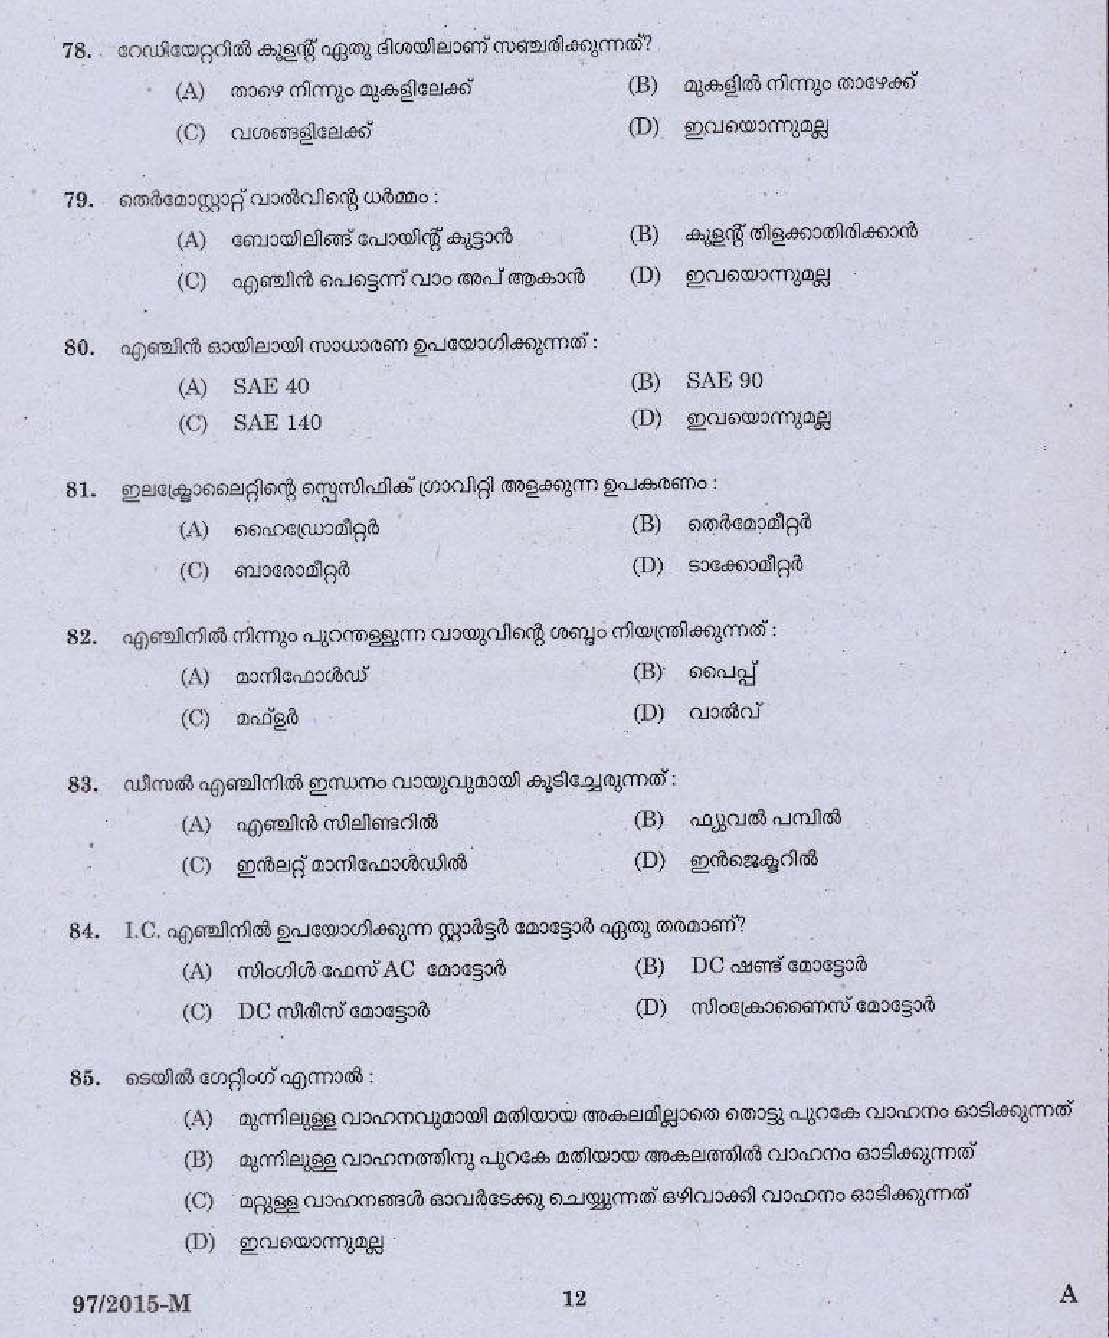 Kerala PSC Driver Grade II Exam 2015 Question Paper Code 972015 M 10